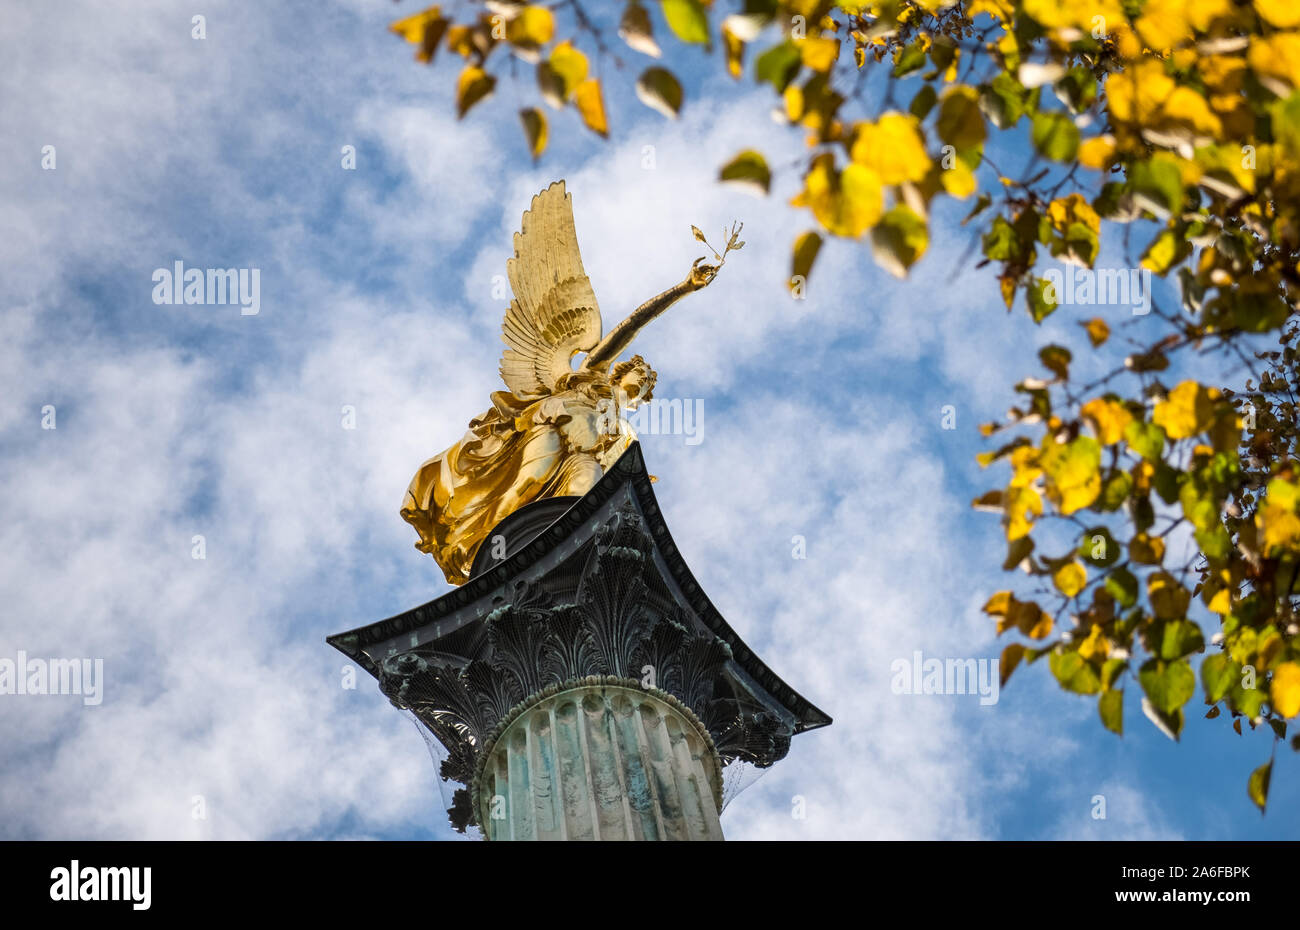 Friedensengel, Prinzregentenplatz, München, Bayern, Deutschland, einem Park Statue von ein goldener Engel auf eine Spalte, und das Denkmal für den Frieden. Stockfoto